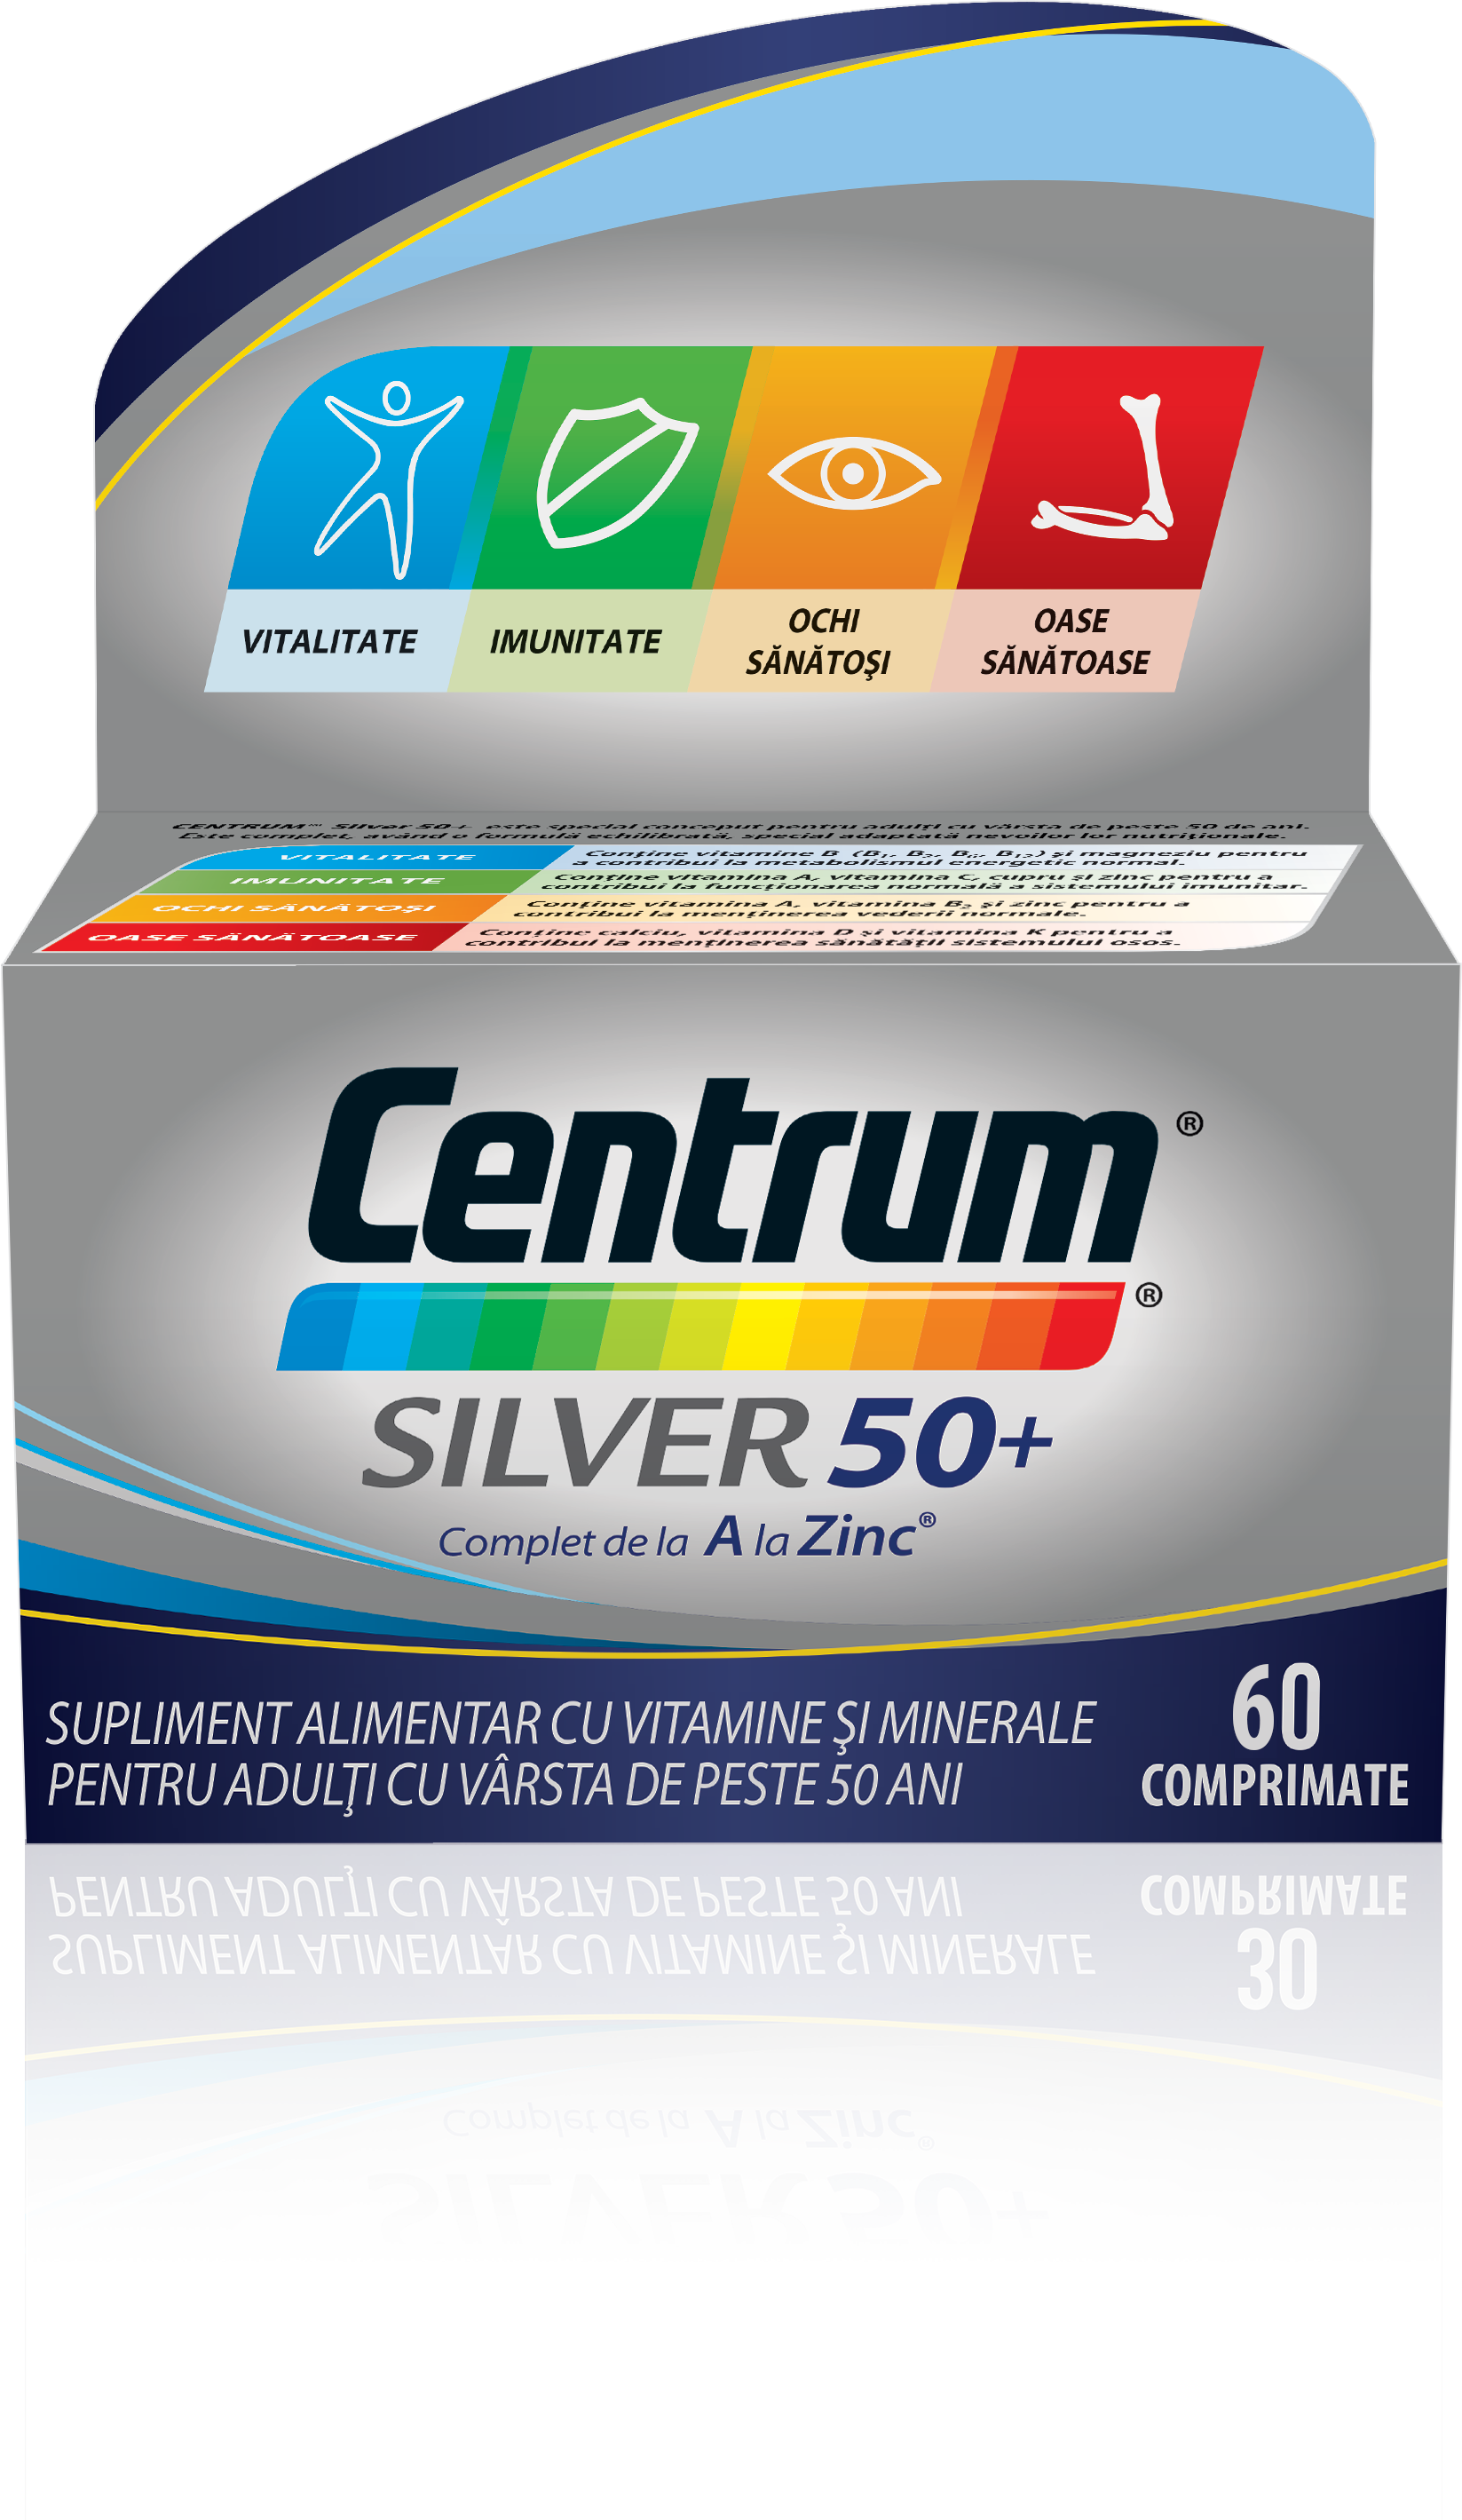 Adulti - Centrum silver 50+ complet de la A la Zinc, 30 comprimate